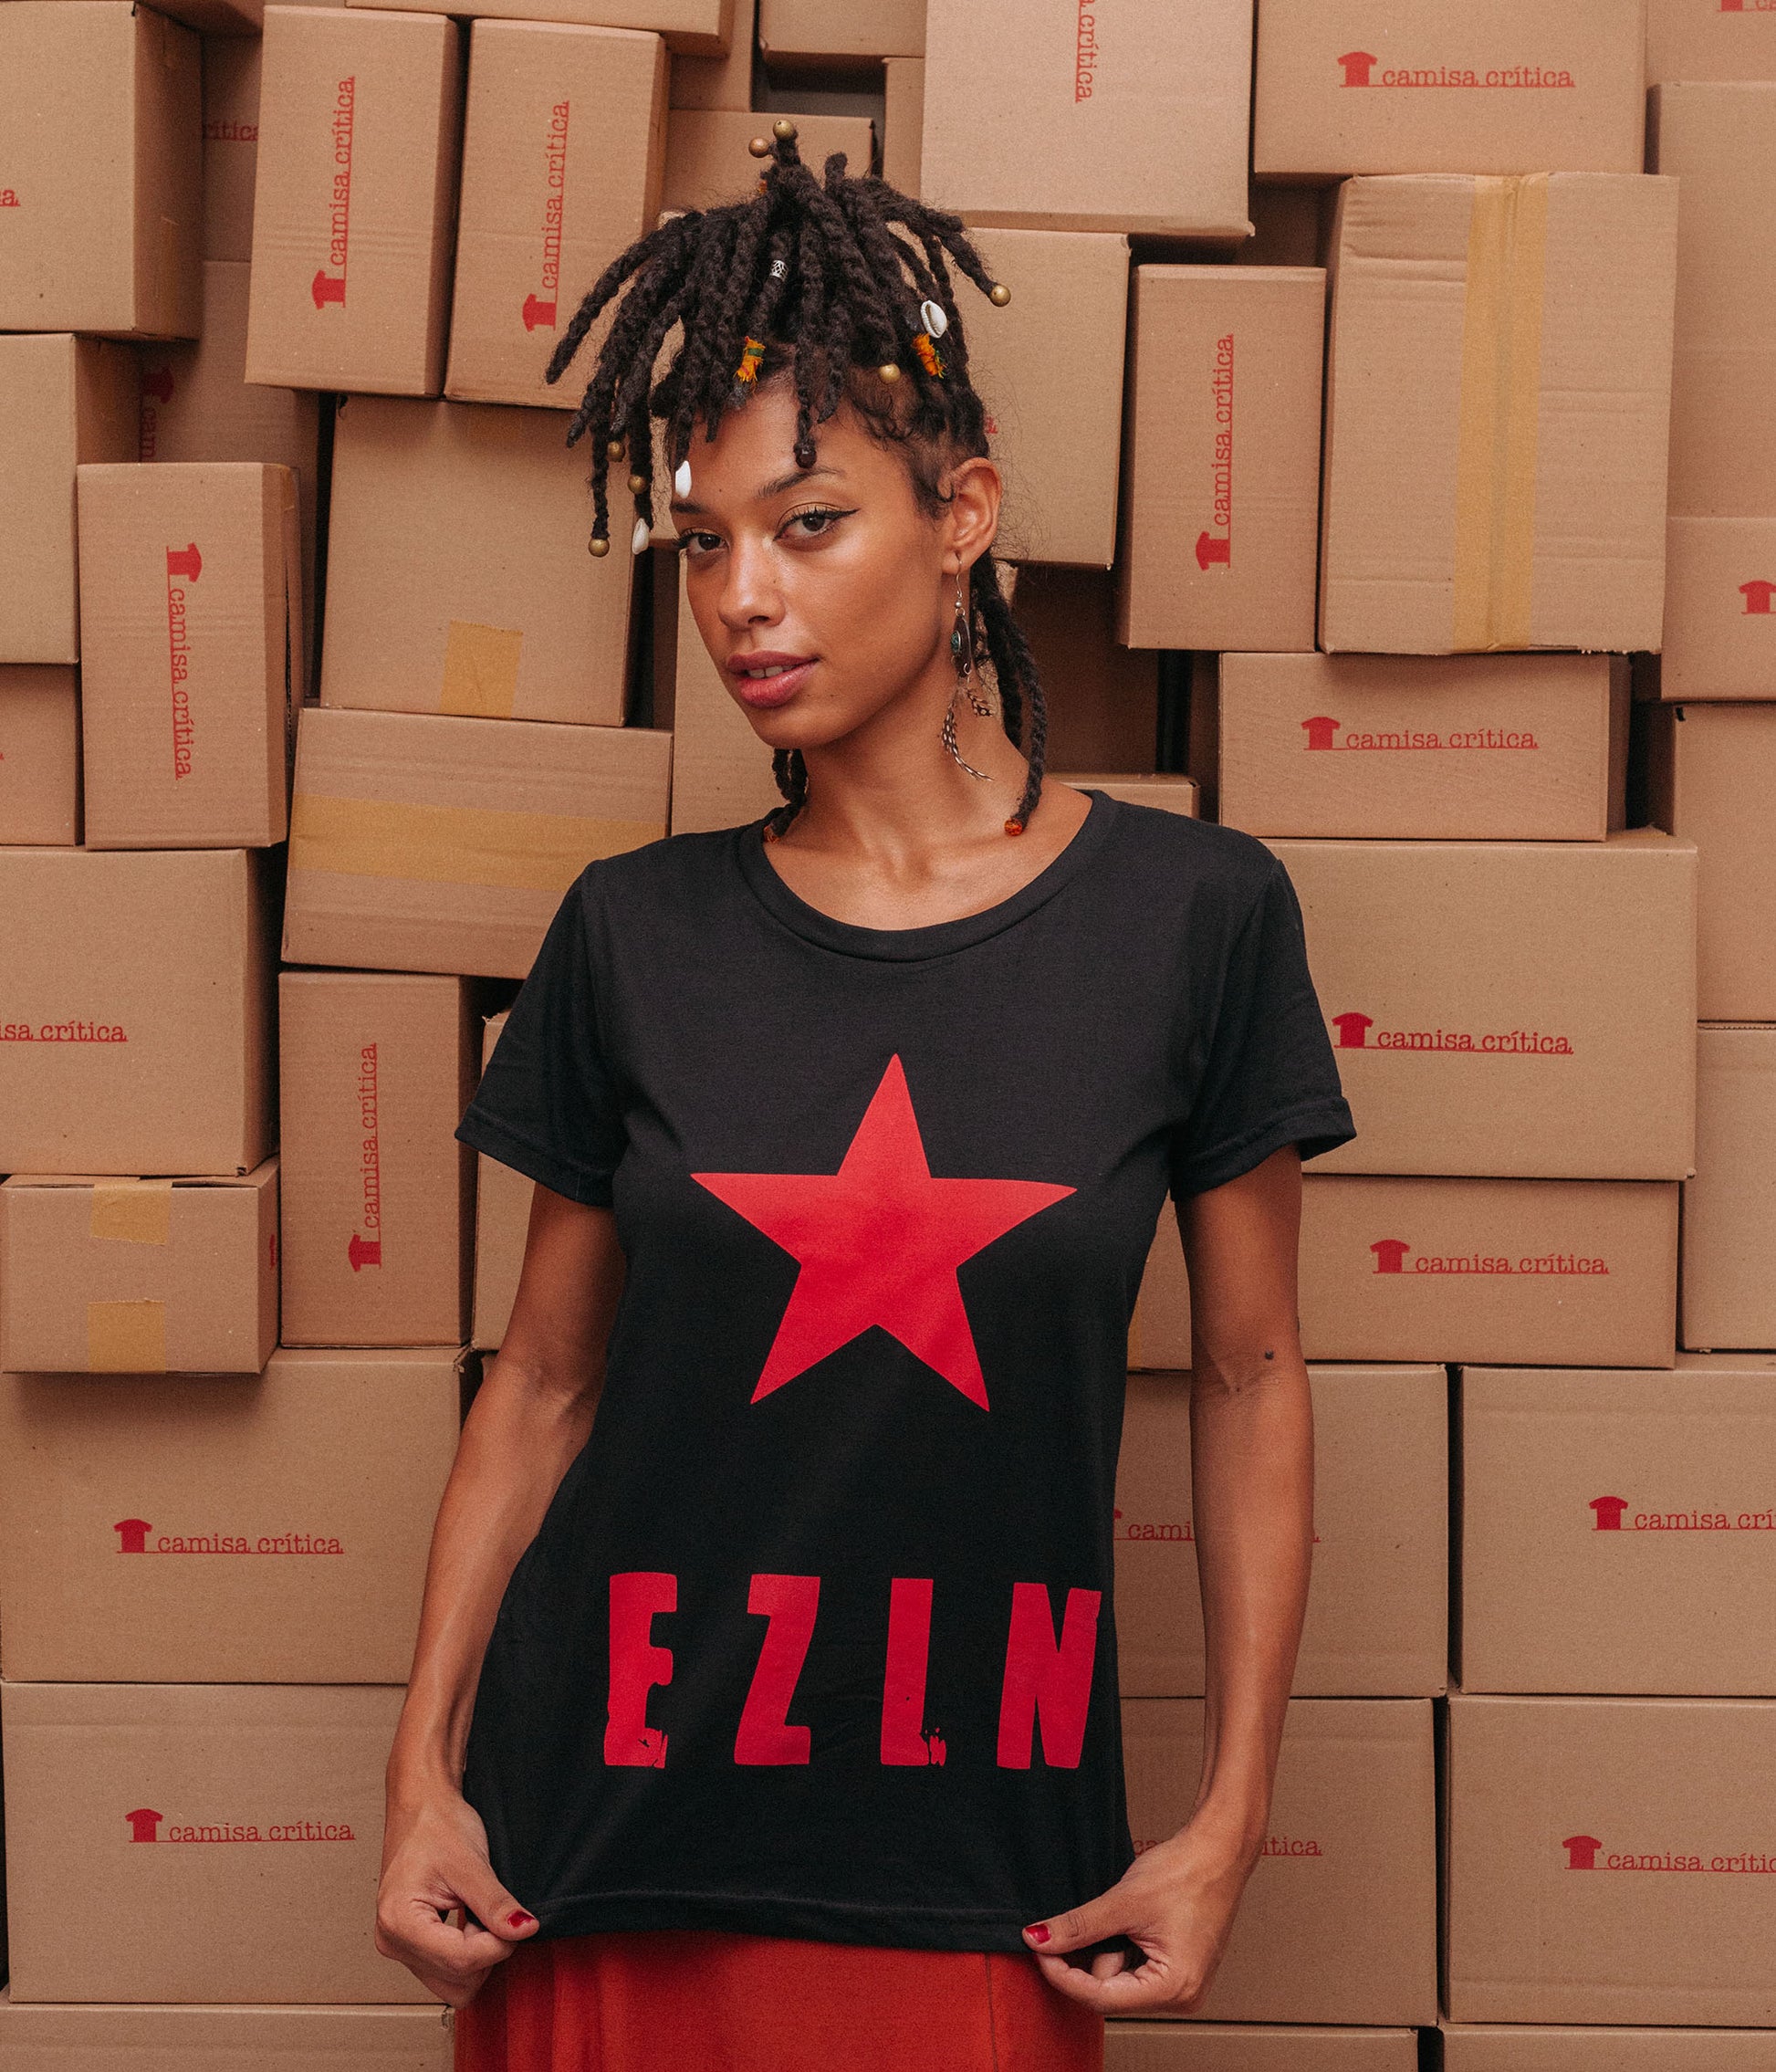 Mulher vestindo Camiseta Baby Look Estampa:  Texto escrito EZLN(Exército Zapatista de Libertação Nacional) com uma estrela acima.